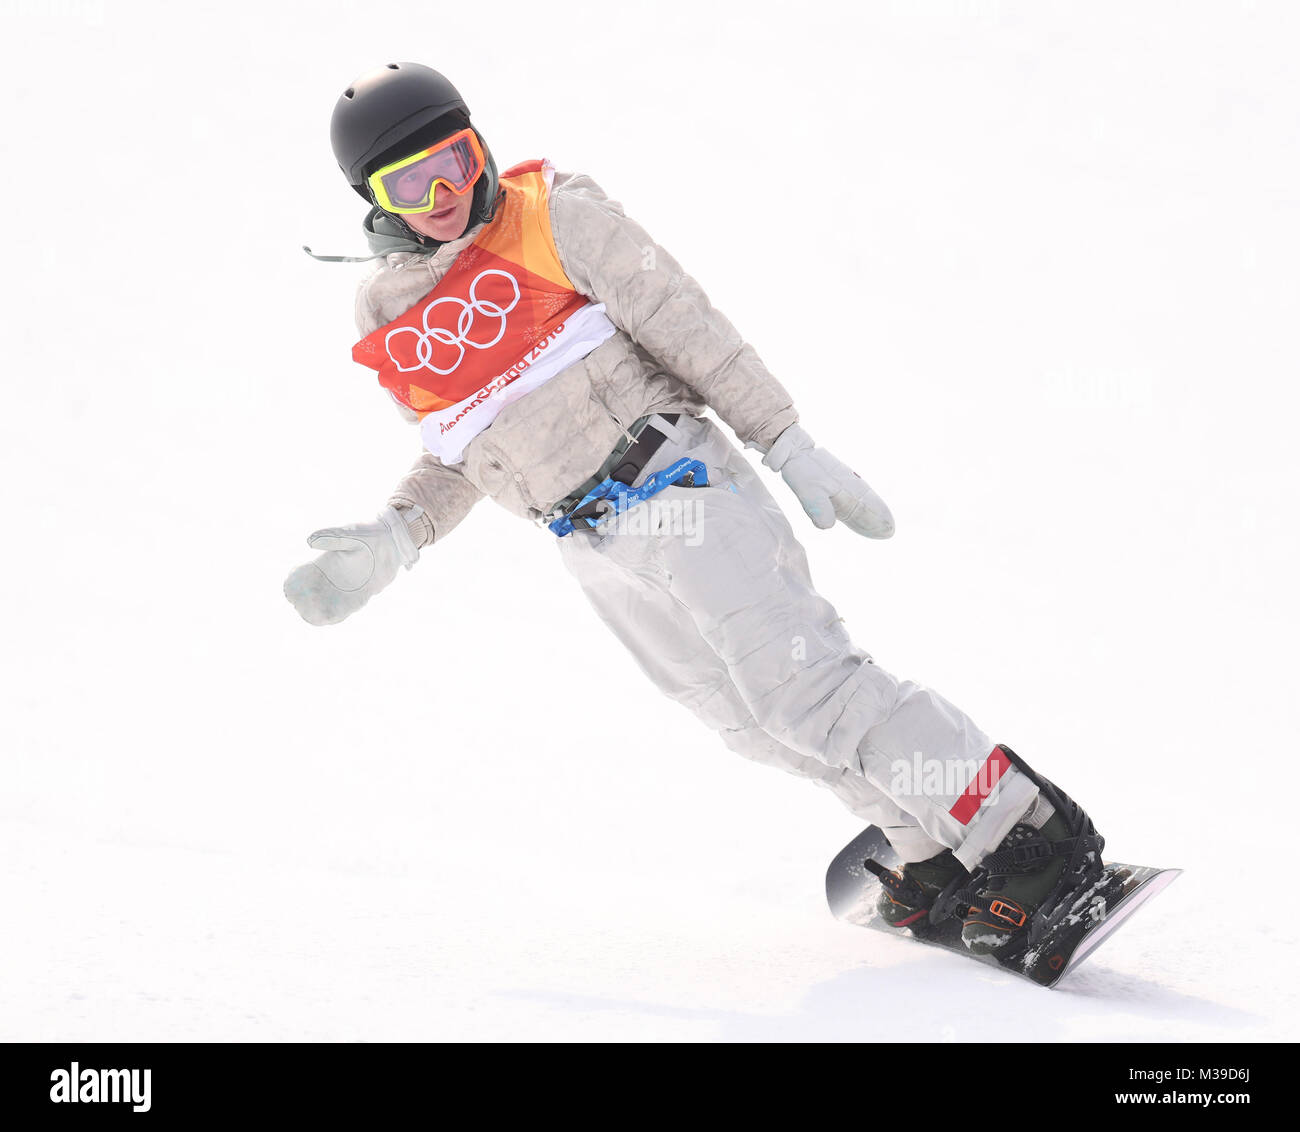 USA's Gerard Redmond lors de son premier run de qualification pour les hommes de Slopestyle Snowboard aux Jeux Olympiques d'hiver de 2018 à PyeongChang en Corée du Sud. Banque D'Images